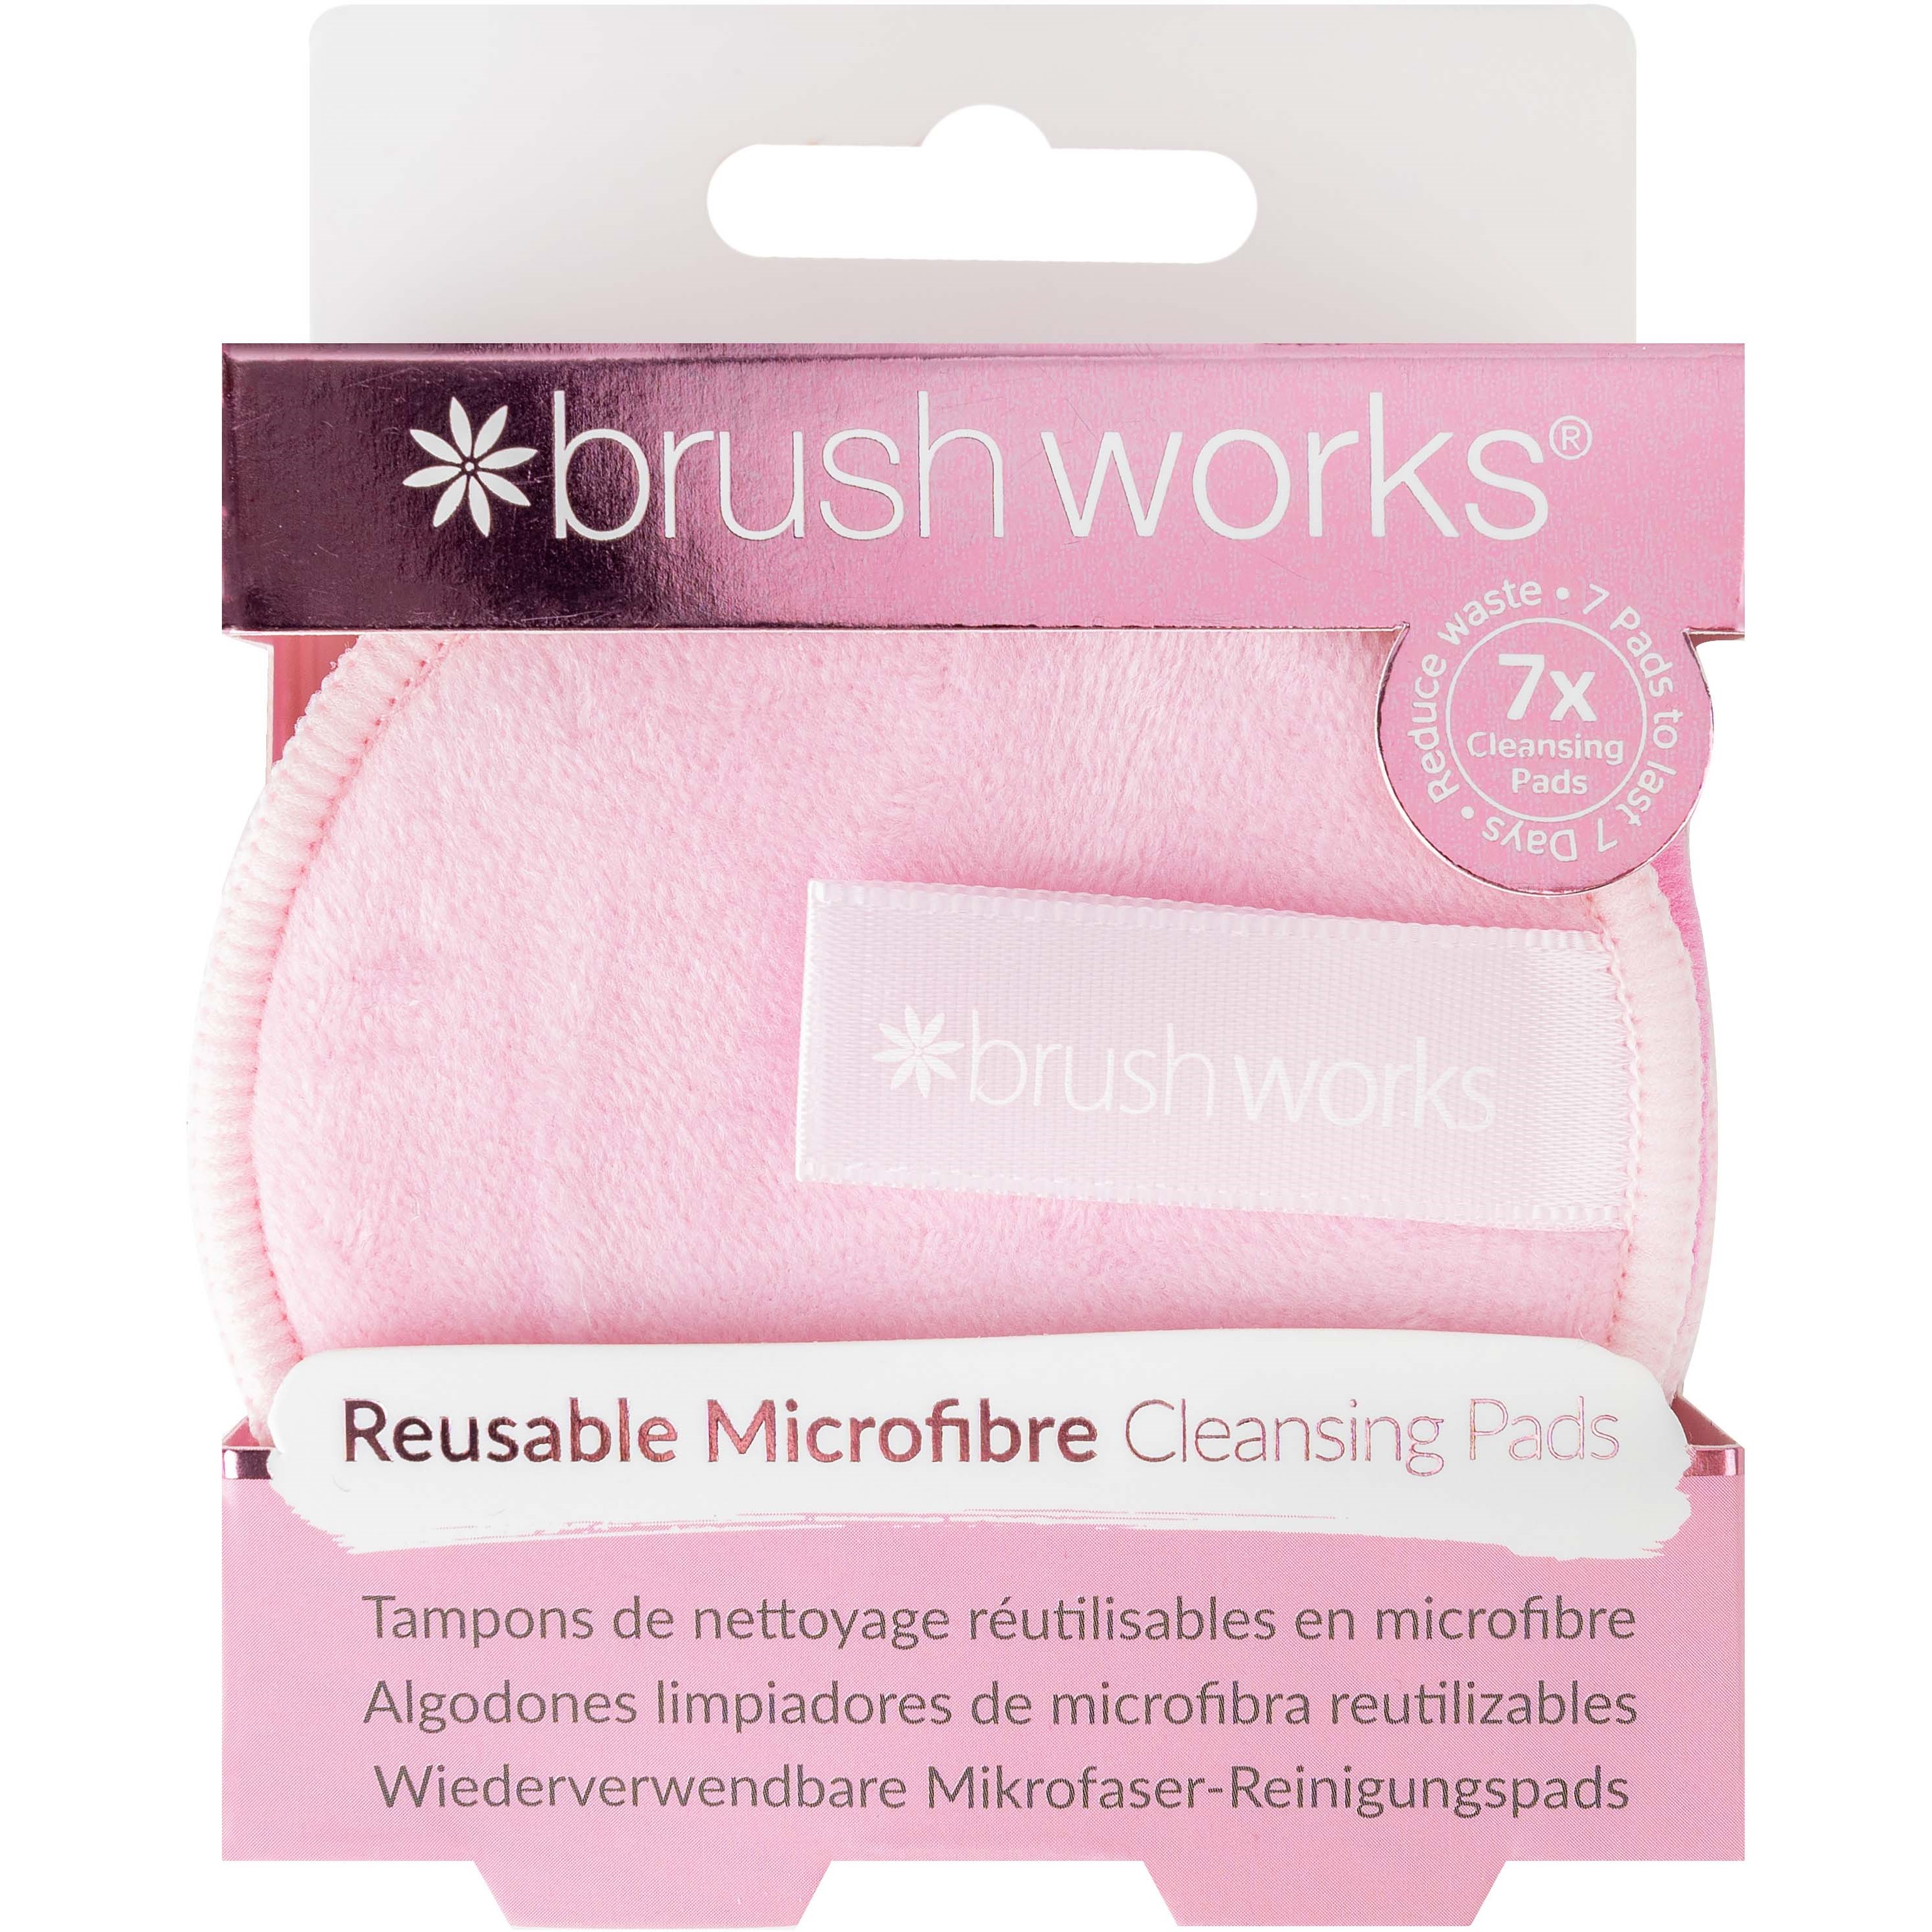 Bilde av Brushworks Reusable Microfibre Cleansing Pads 7 Pcs